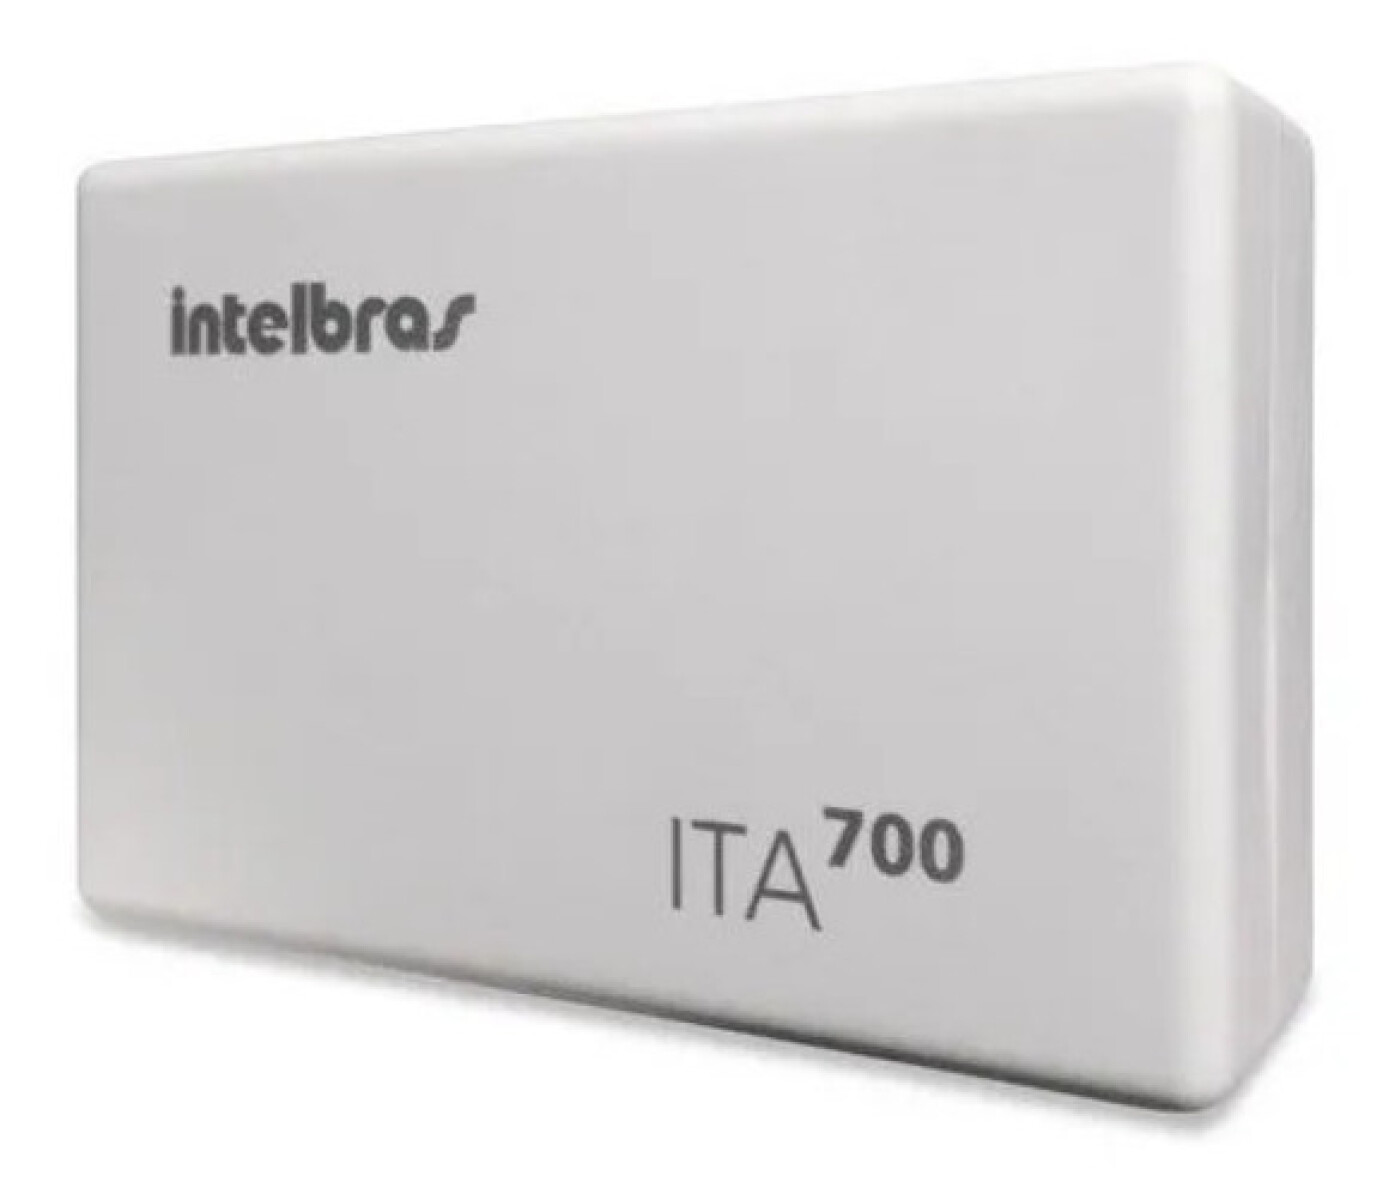 Telefonía Interfase Intelbras ITA 700 IMPACTA/MODULARE - 3652 